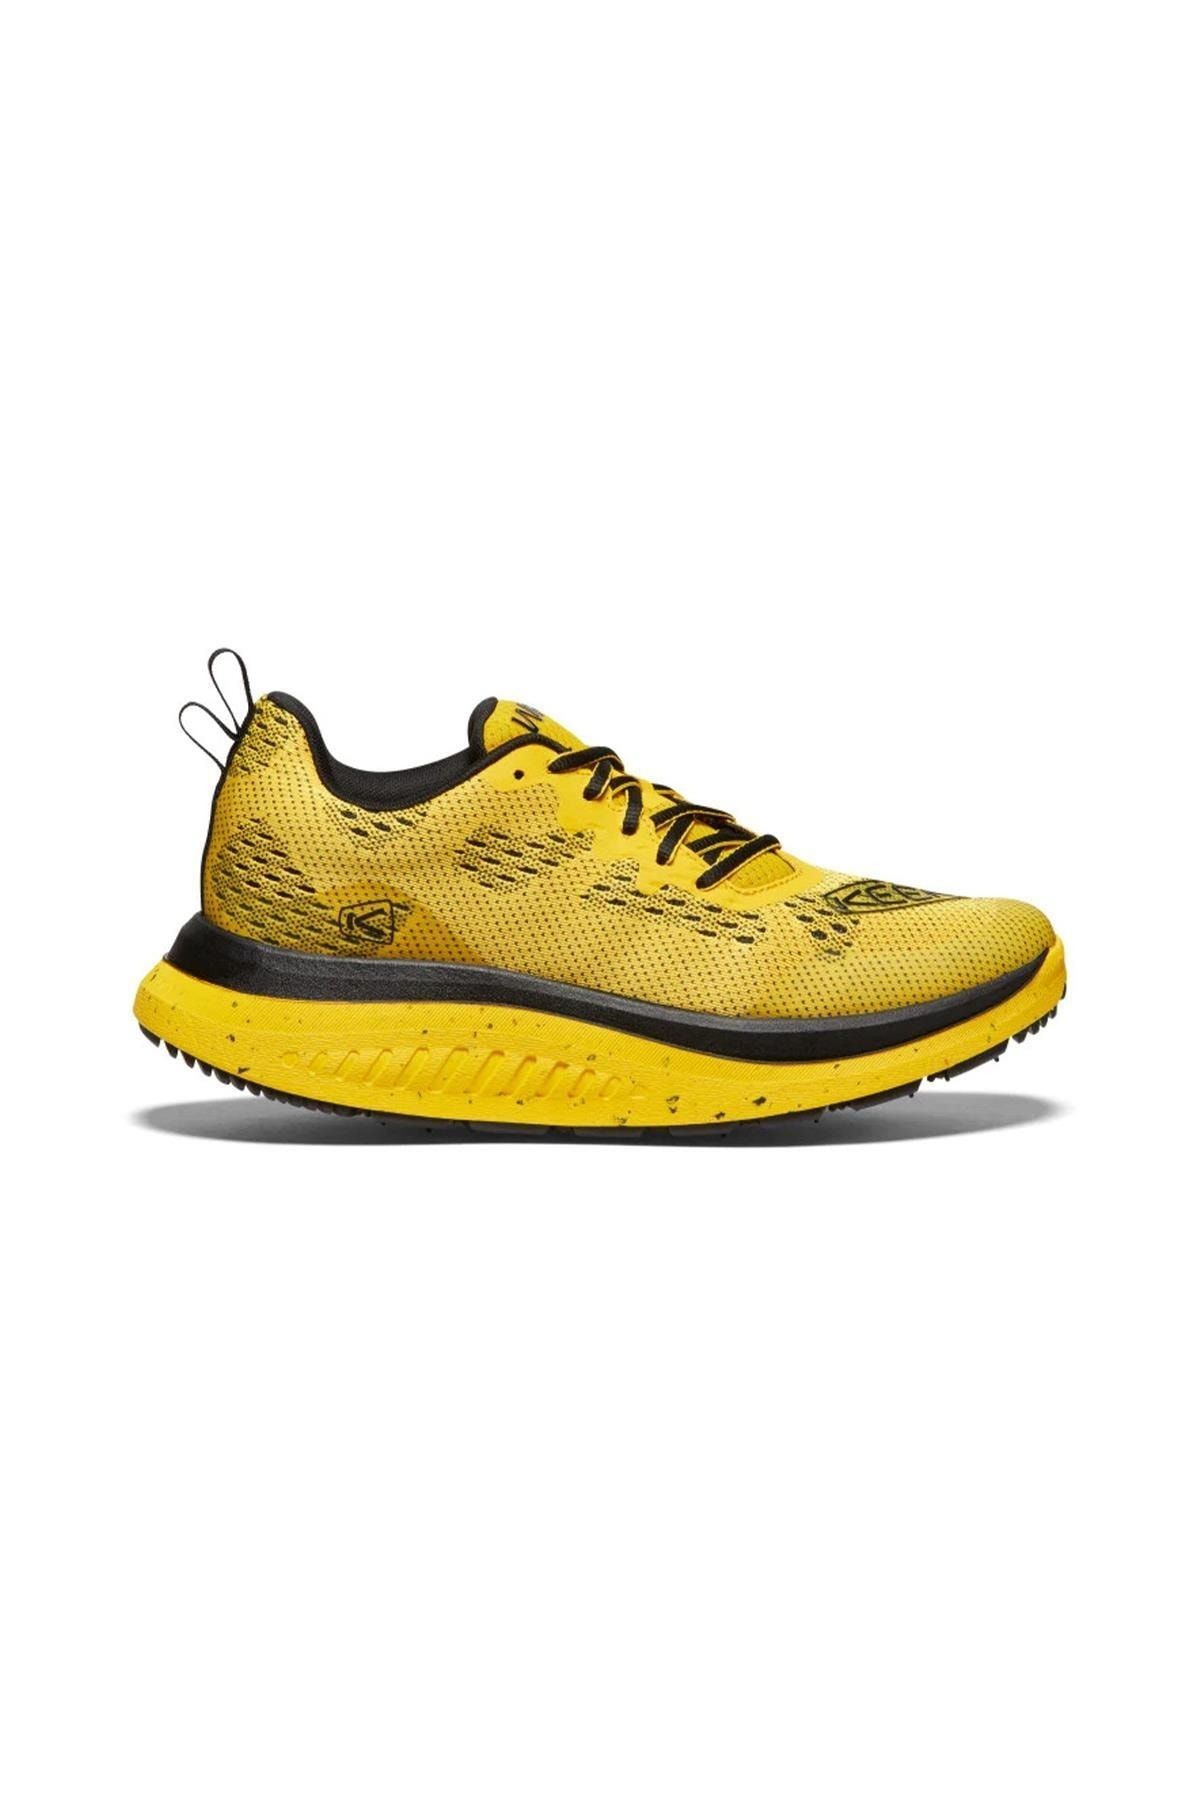 Keen Wk400 - Erkek Yürüyüş Ayakkabısı - Sarı